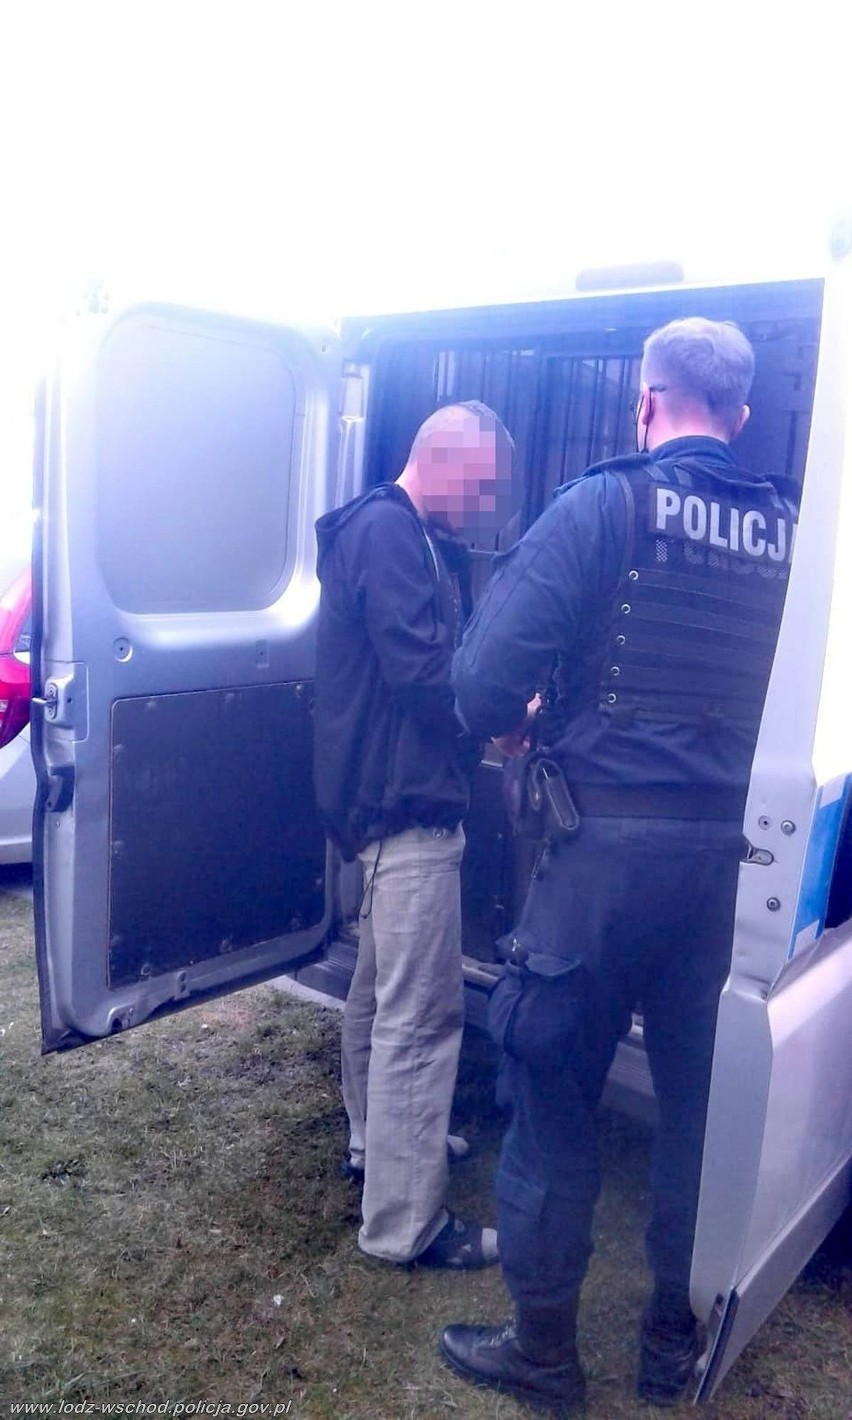 35-letni złodziej złapany po policyjnym pościgu. Mieszkaniec Tuszyna napadł na ekspedientkę i ukradł pieniądze